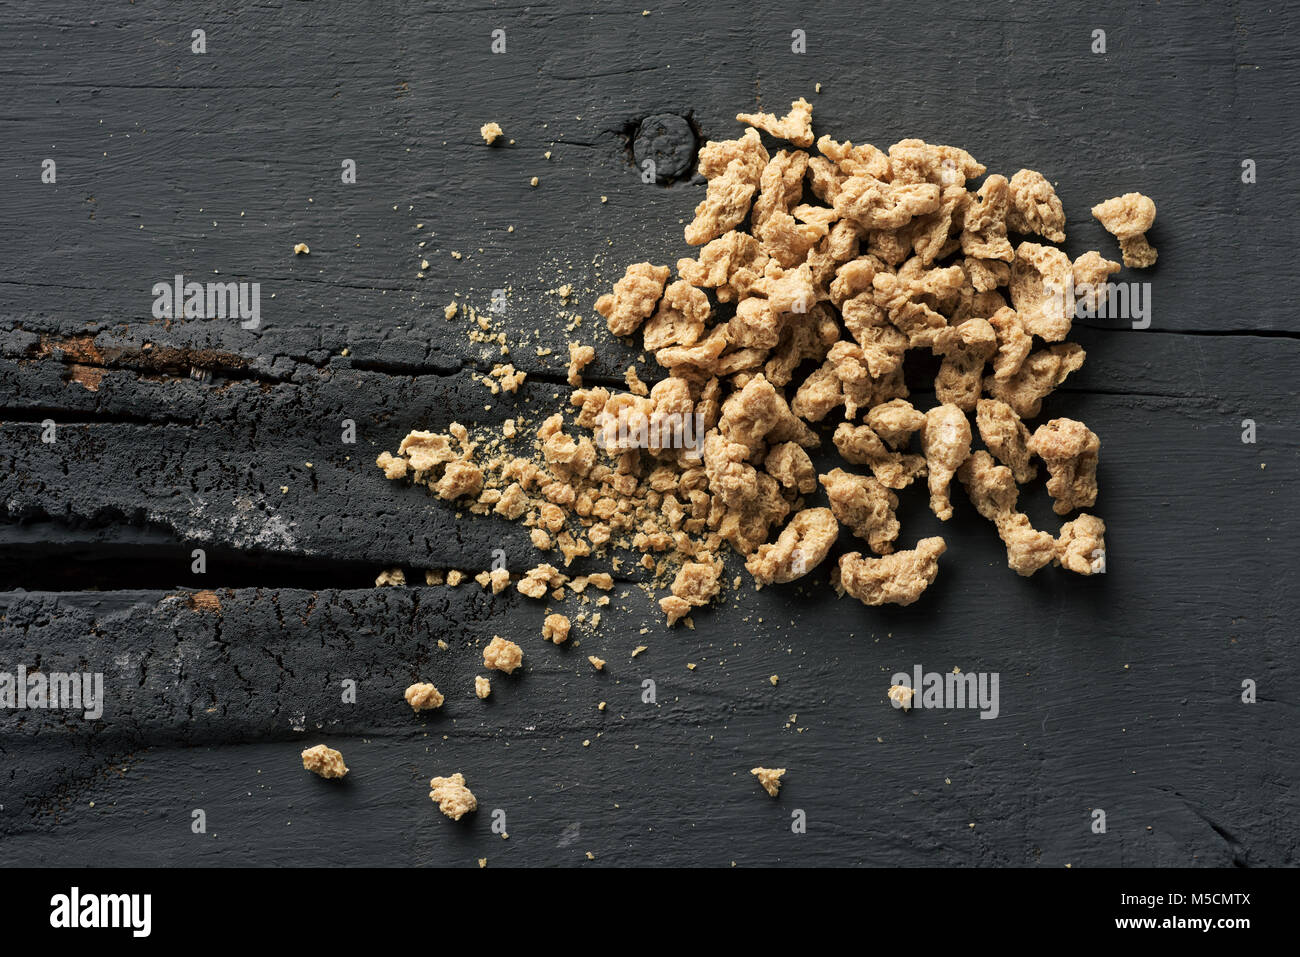 Hohen winkel Blick auf einige Stücke von texturiertem Soja Protein auf einem grauen rustikalen Holztisch Stockfoto